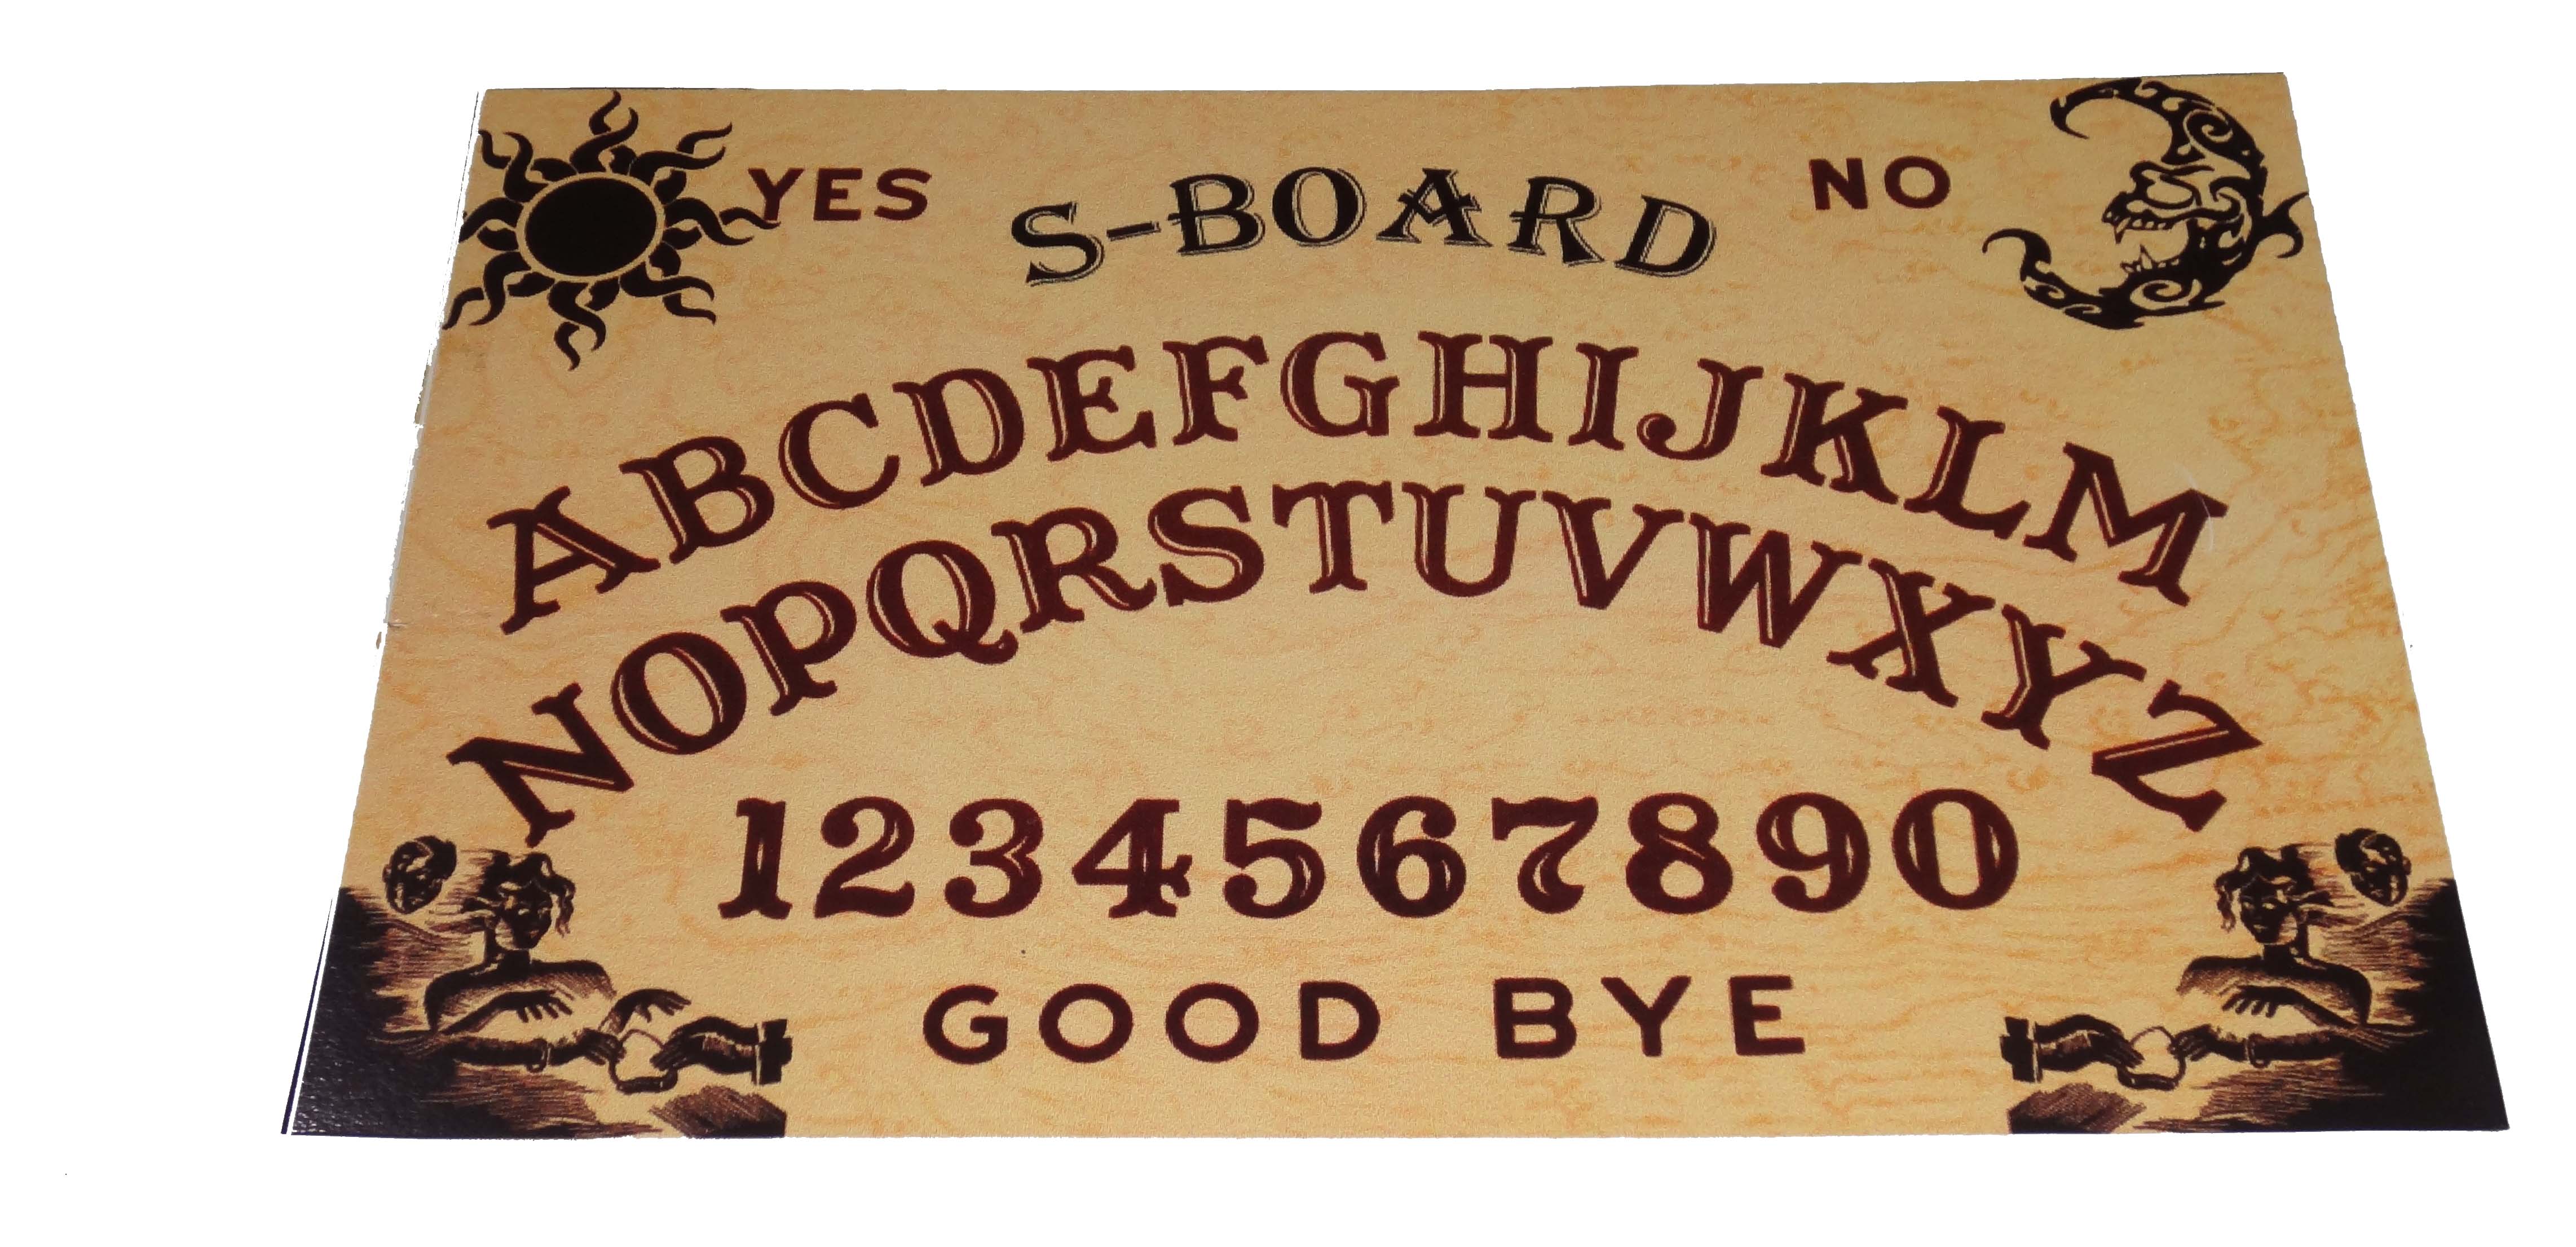 S-Board / Ouija Board / Spirit Board